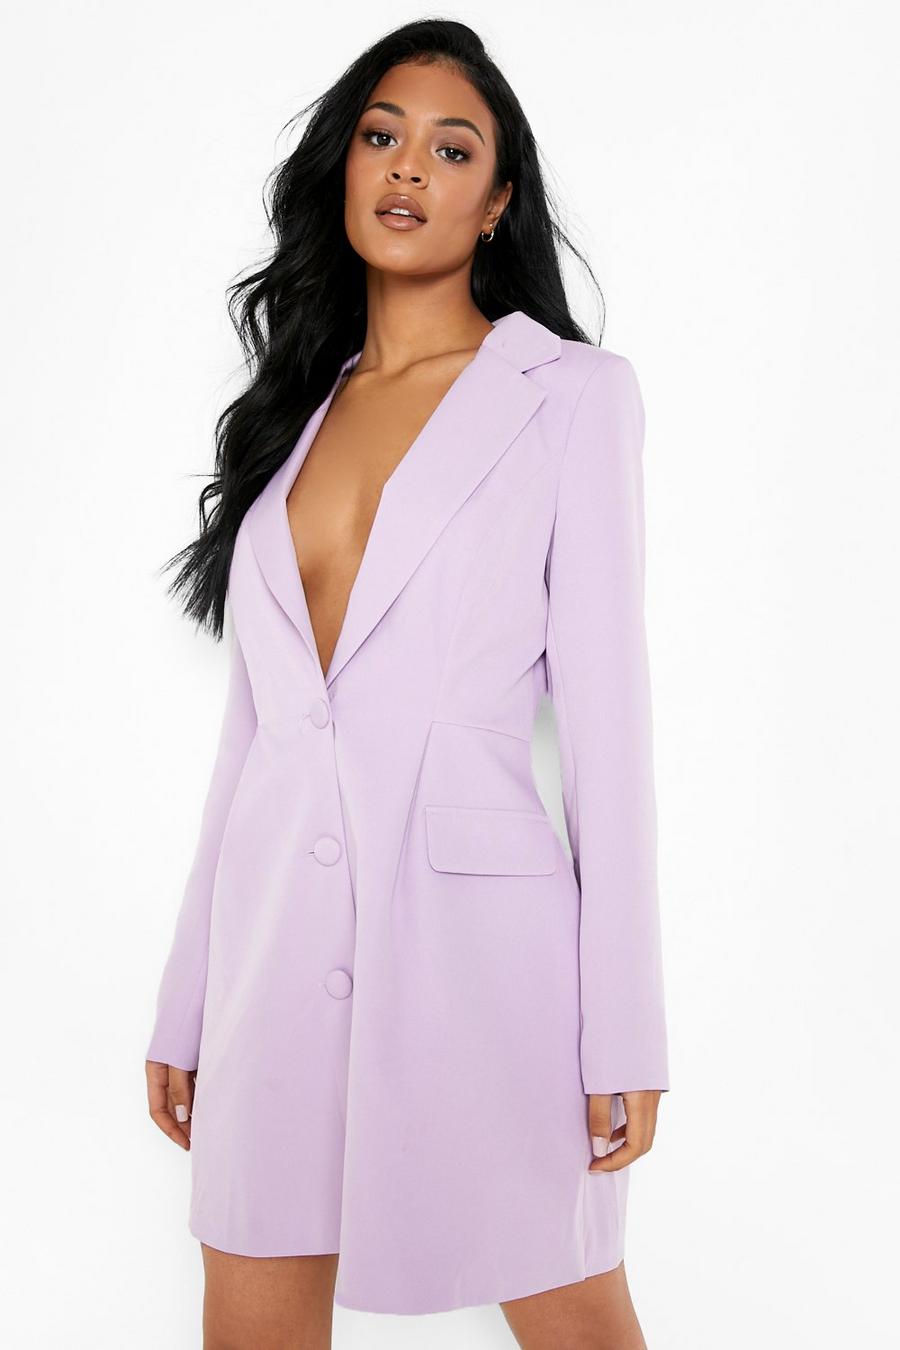 https://media.boohoo.com/i/boohoo/tzz02212_lilac_xl/female-lilac-tall-shaped-waist-blazer-dress/?w=900&qlt=default&fmt.jp2.qlt=70&fmt=auto&sm=fit